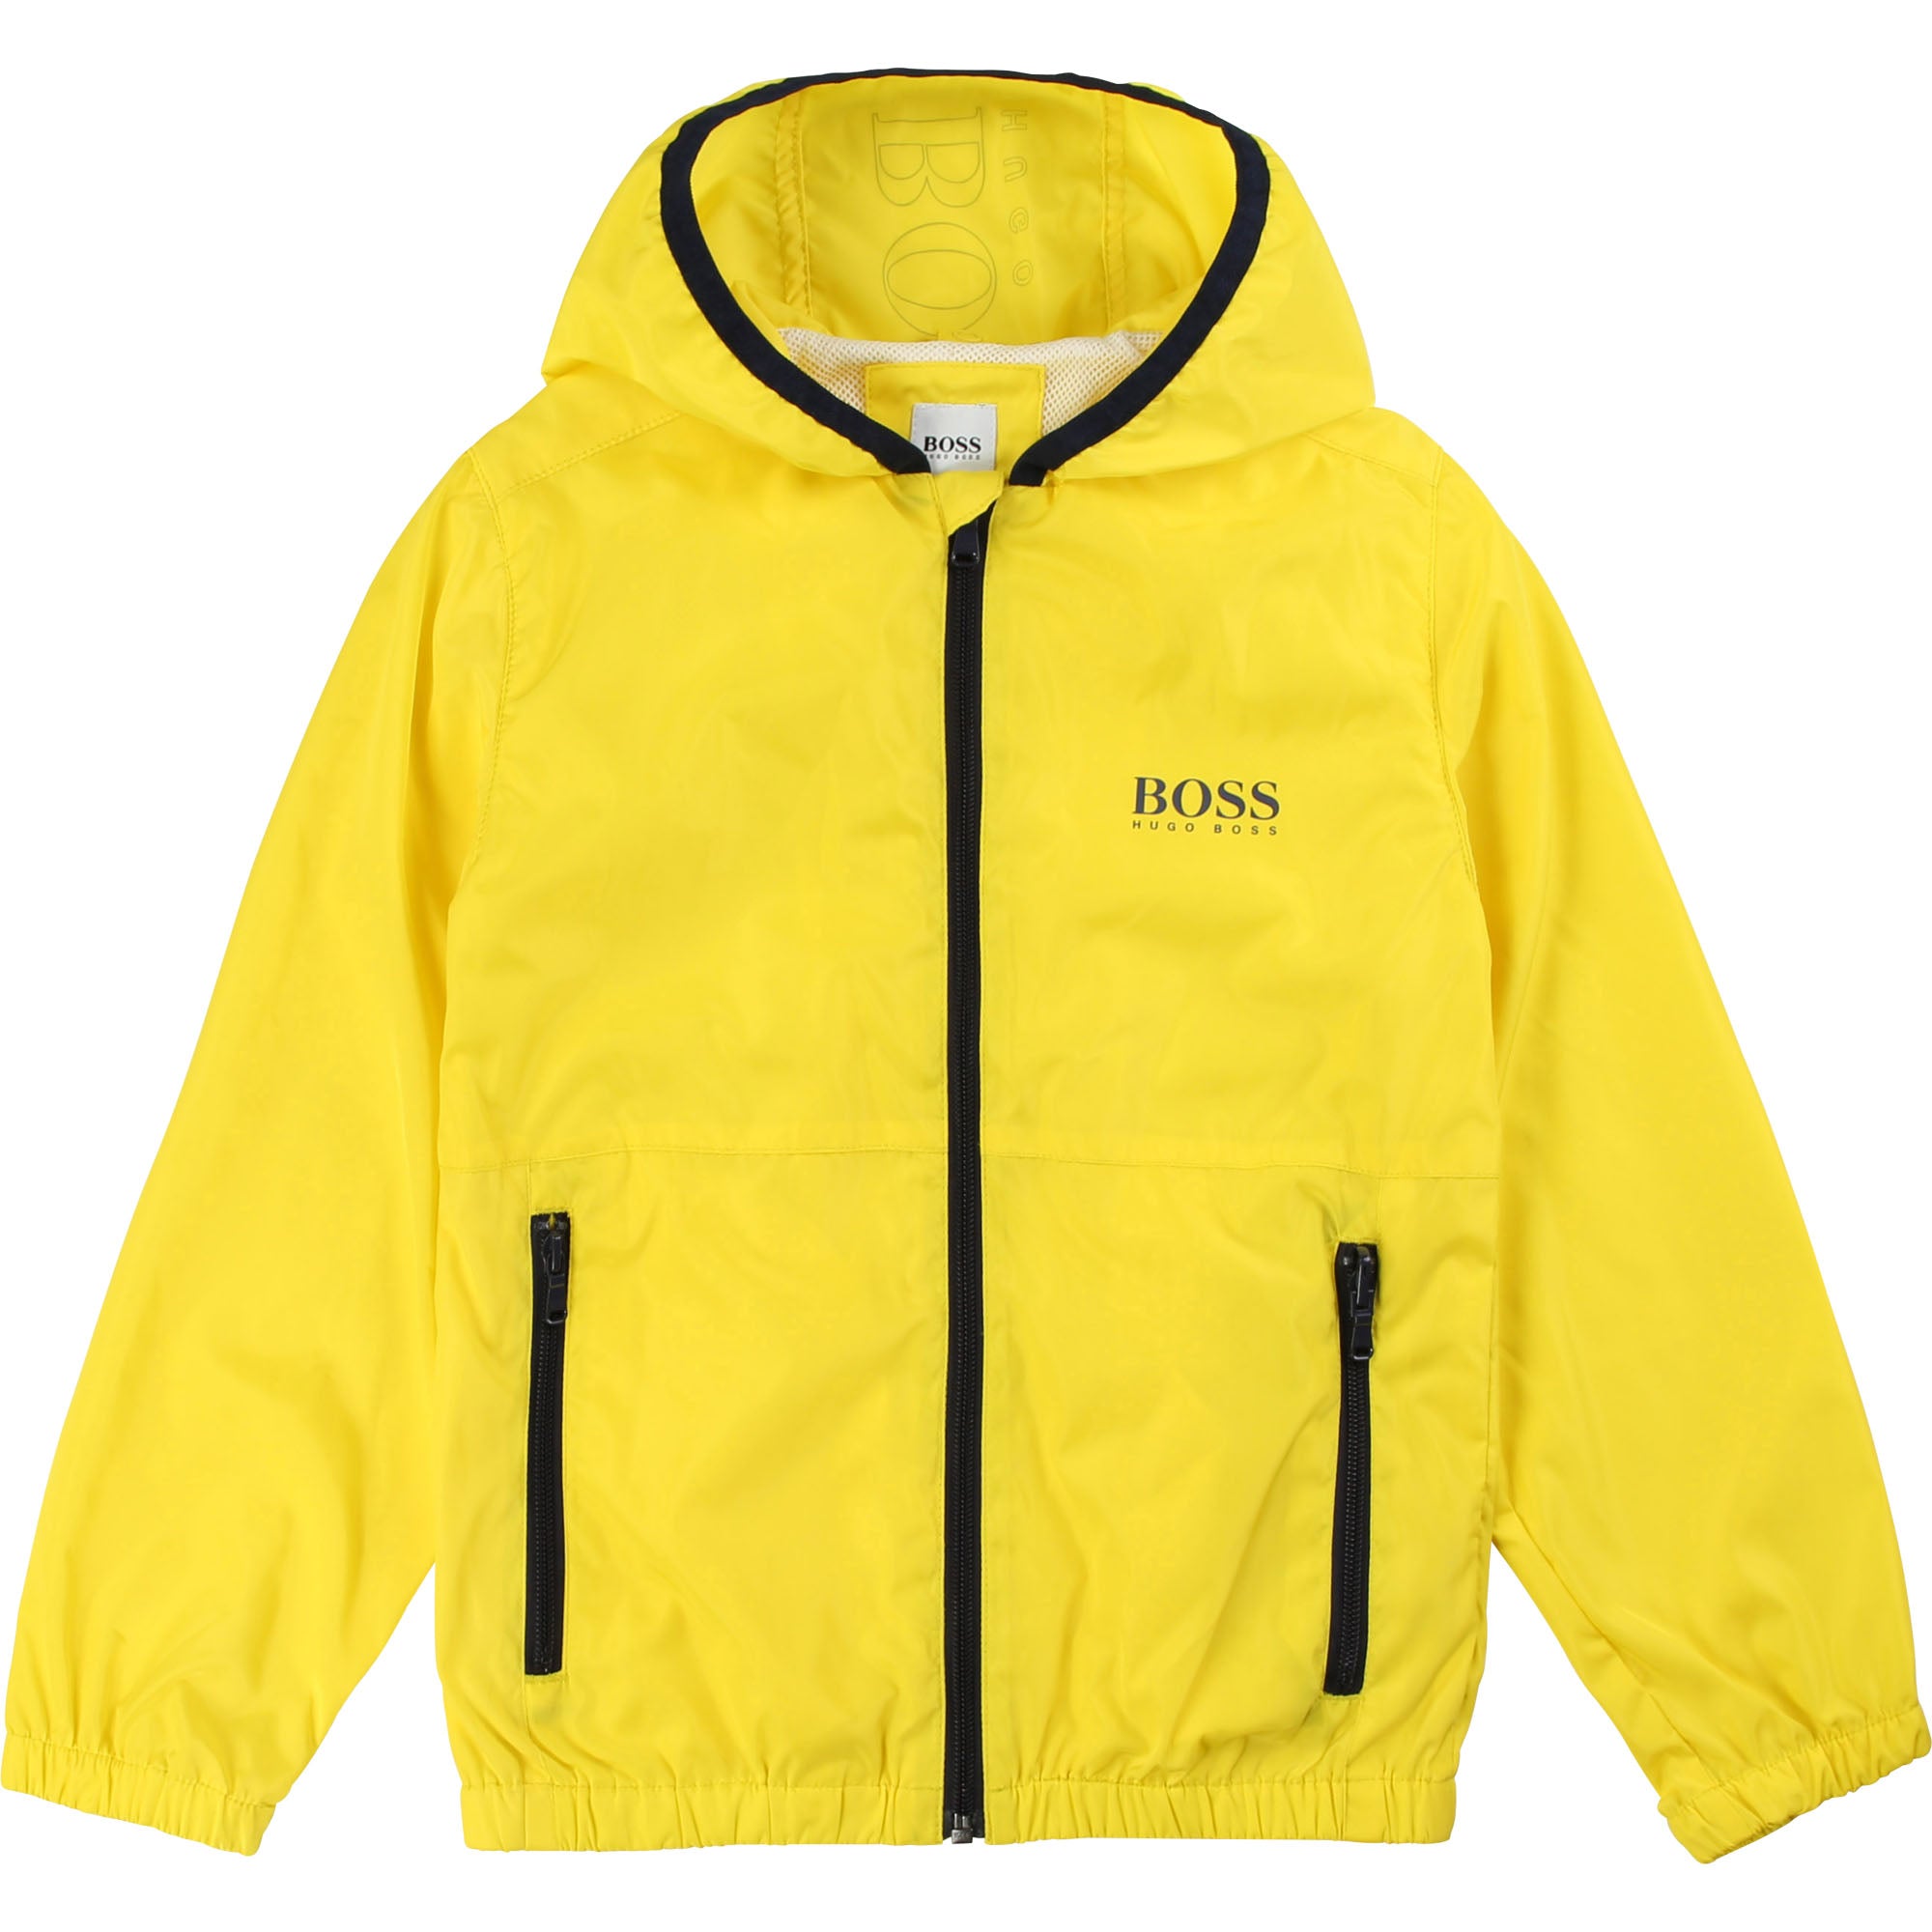 Boys Yellow Zip-up Jacket